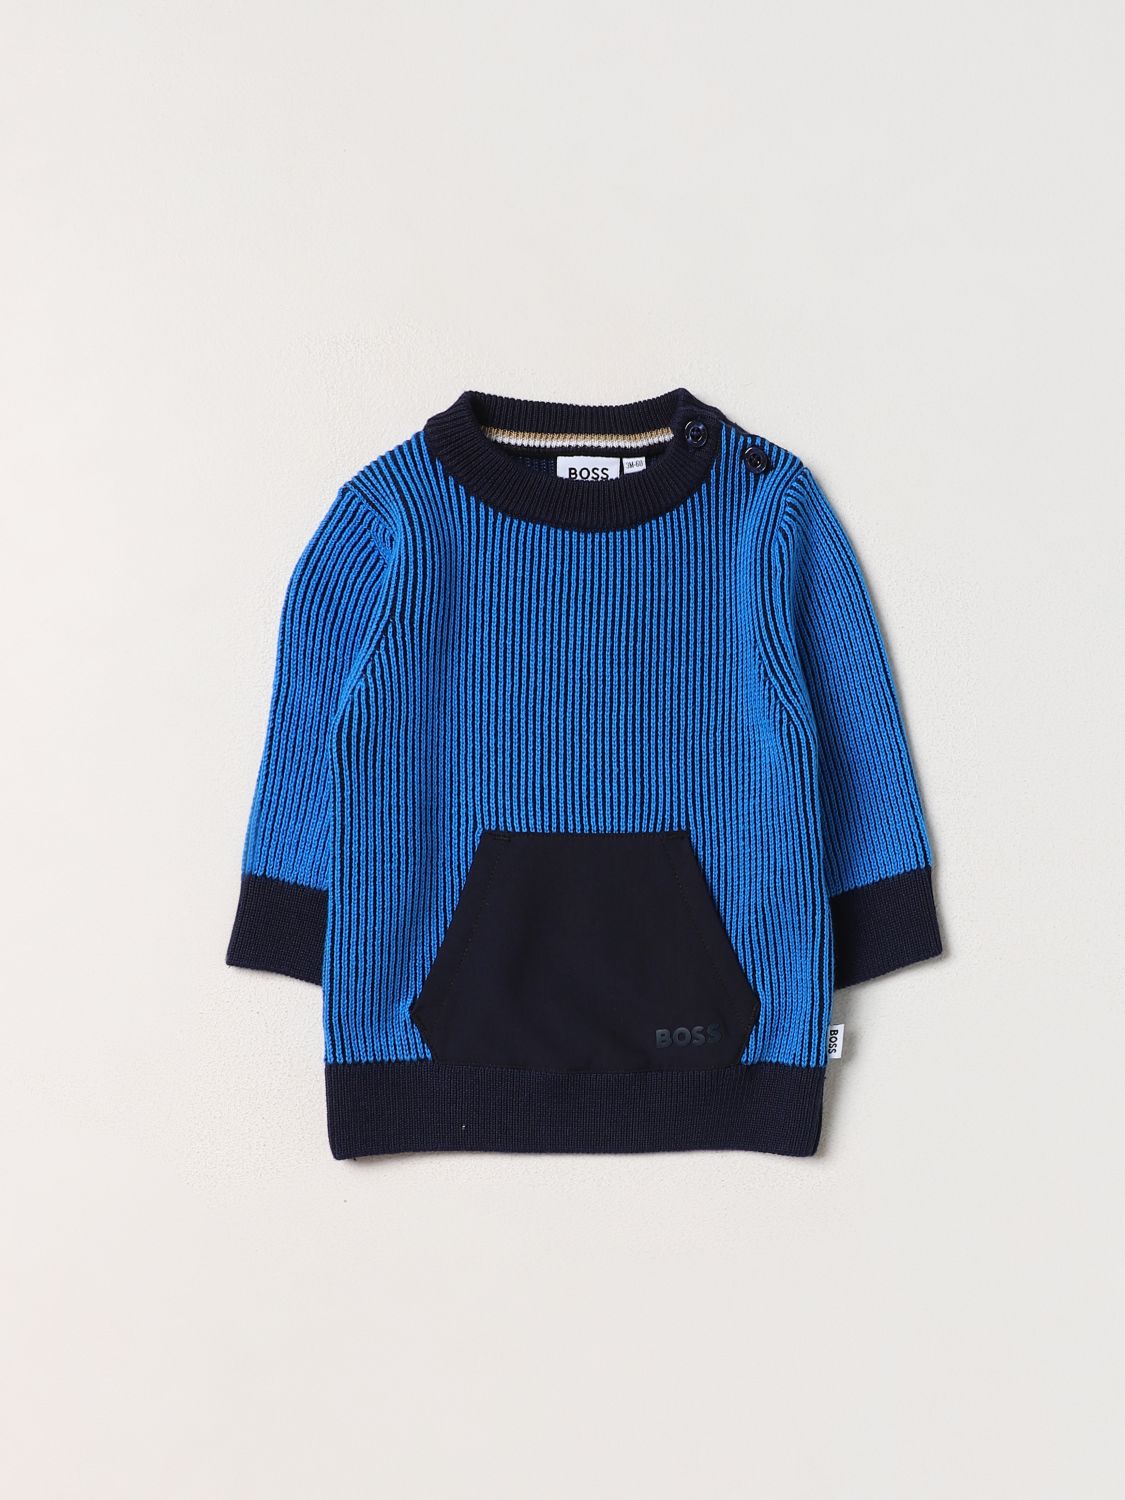 Bosswear Babies' Sweater Boss Kidswear Kids Color Blue